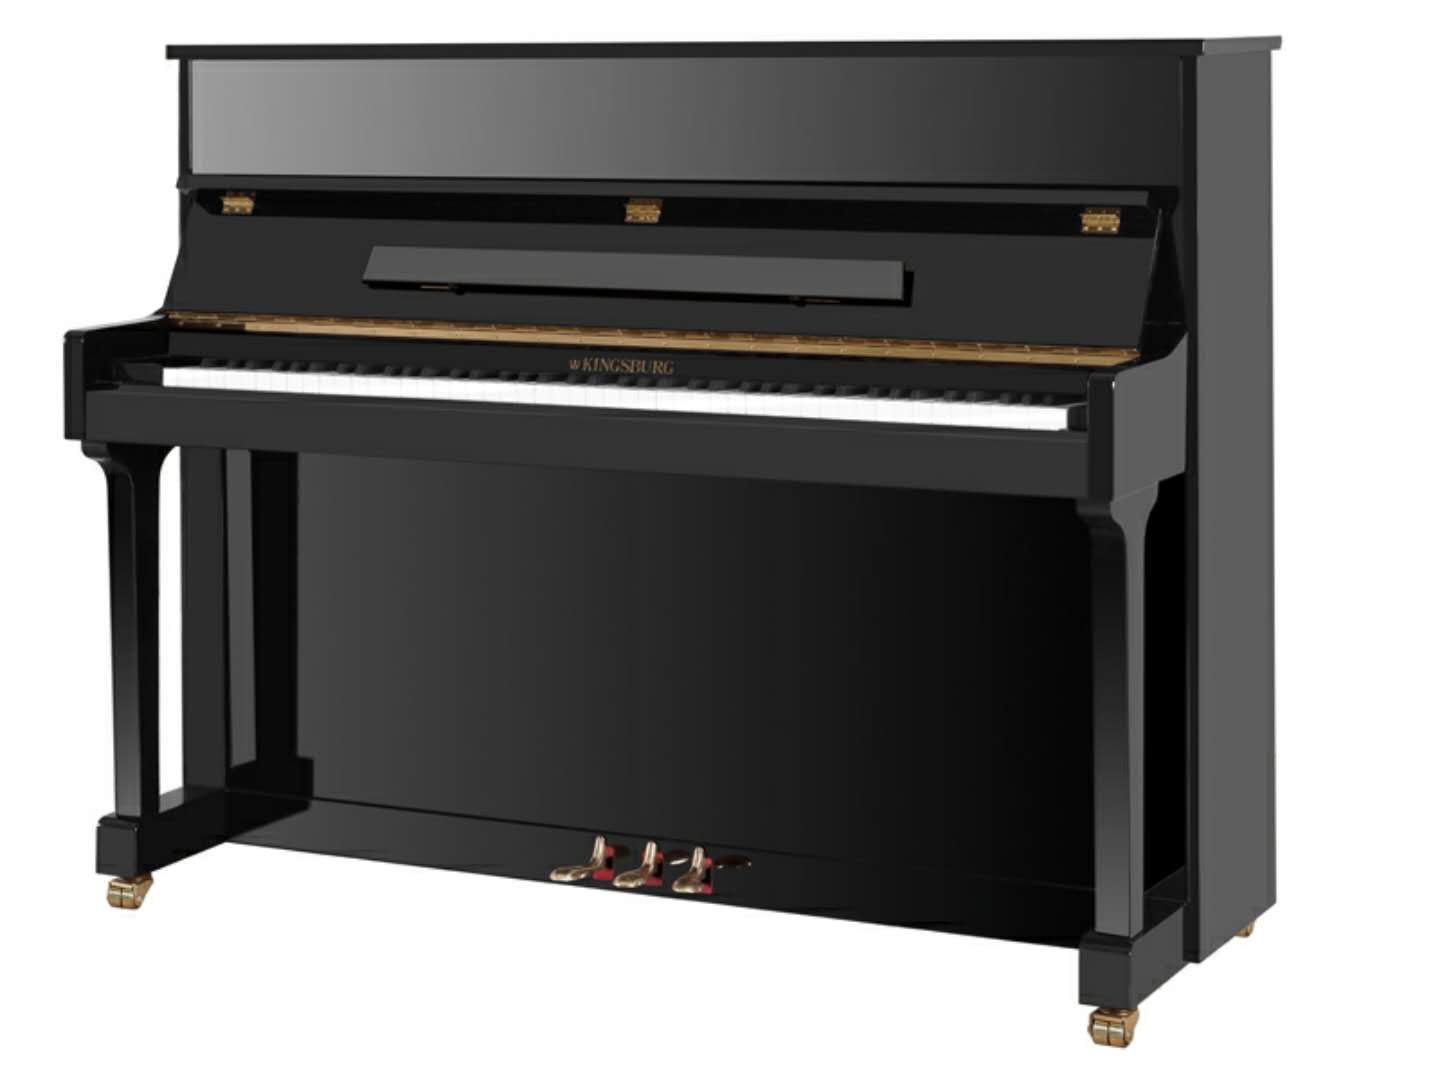 Kingsburg KF118 Siyah Konsol Piyano